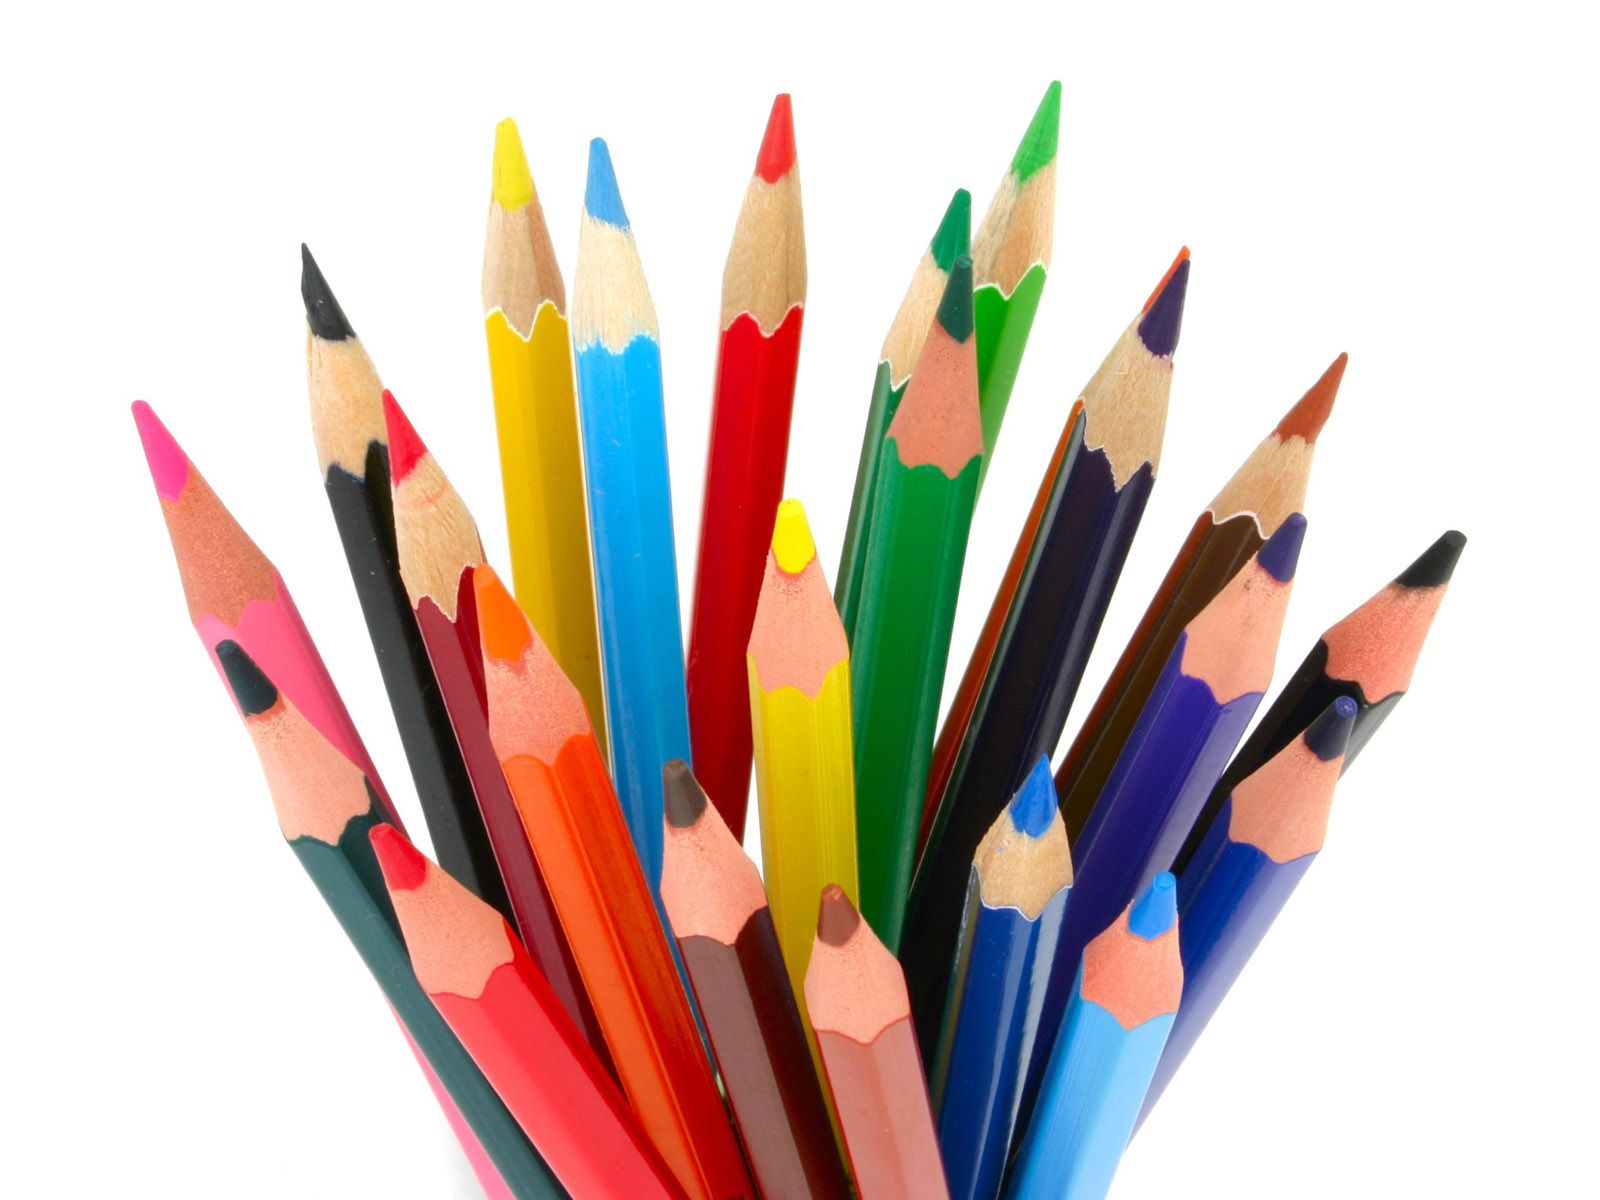 Colored pencils - Pencils Wallpaper (22186659) - Fanpop